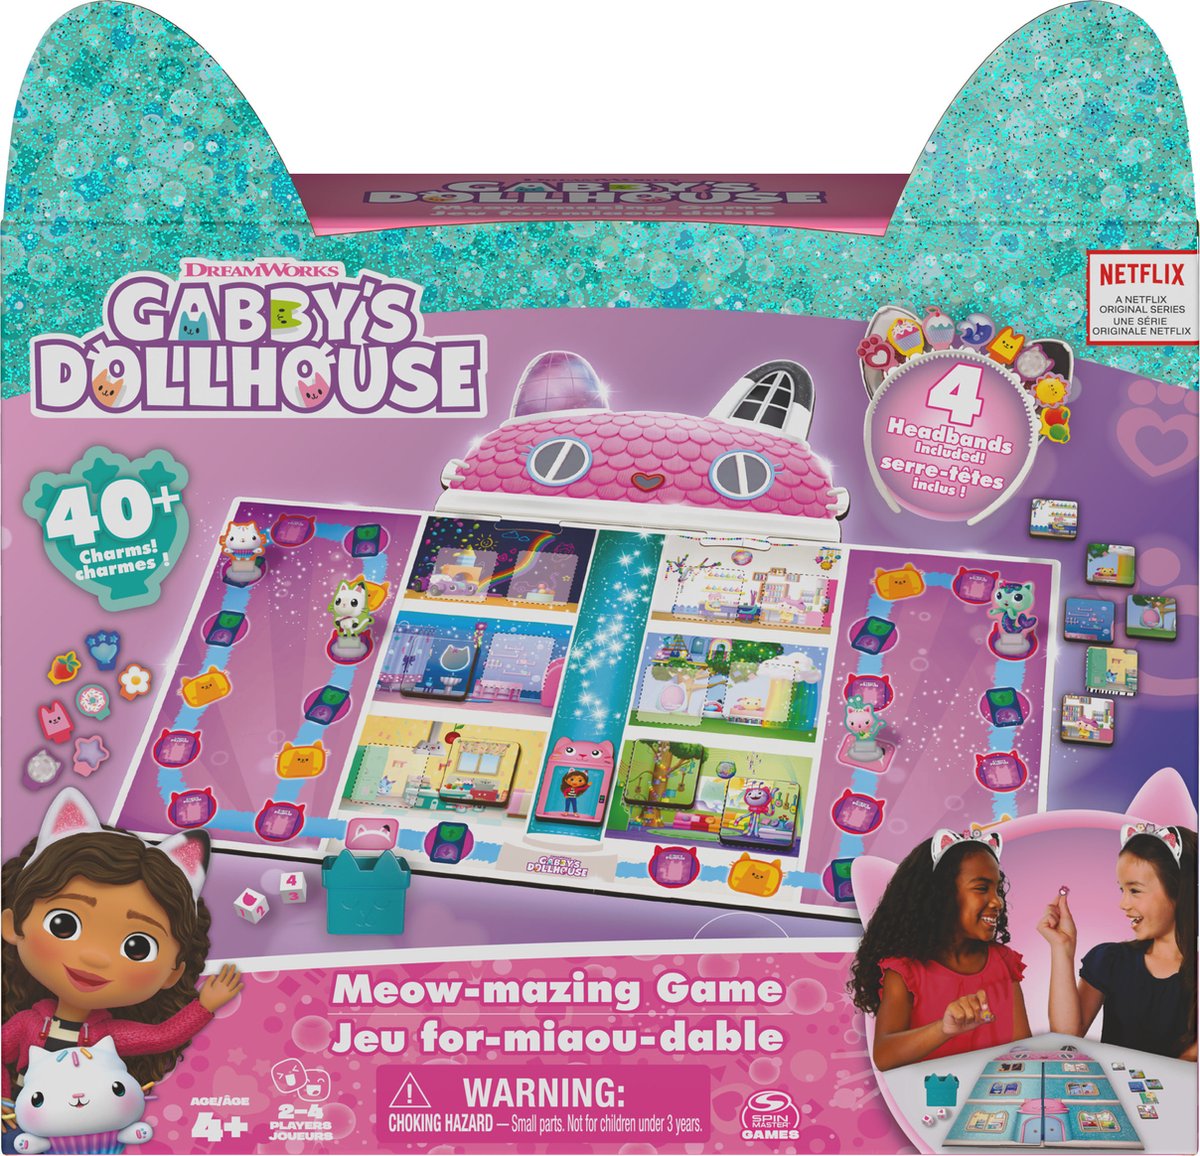 Gabby's Dollhouse, Jeu de société for-miaou-dable basé sur le dessin a